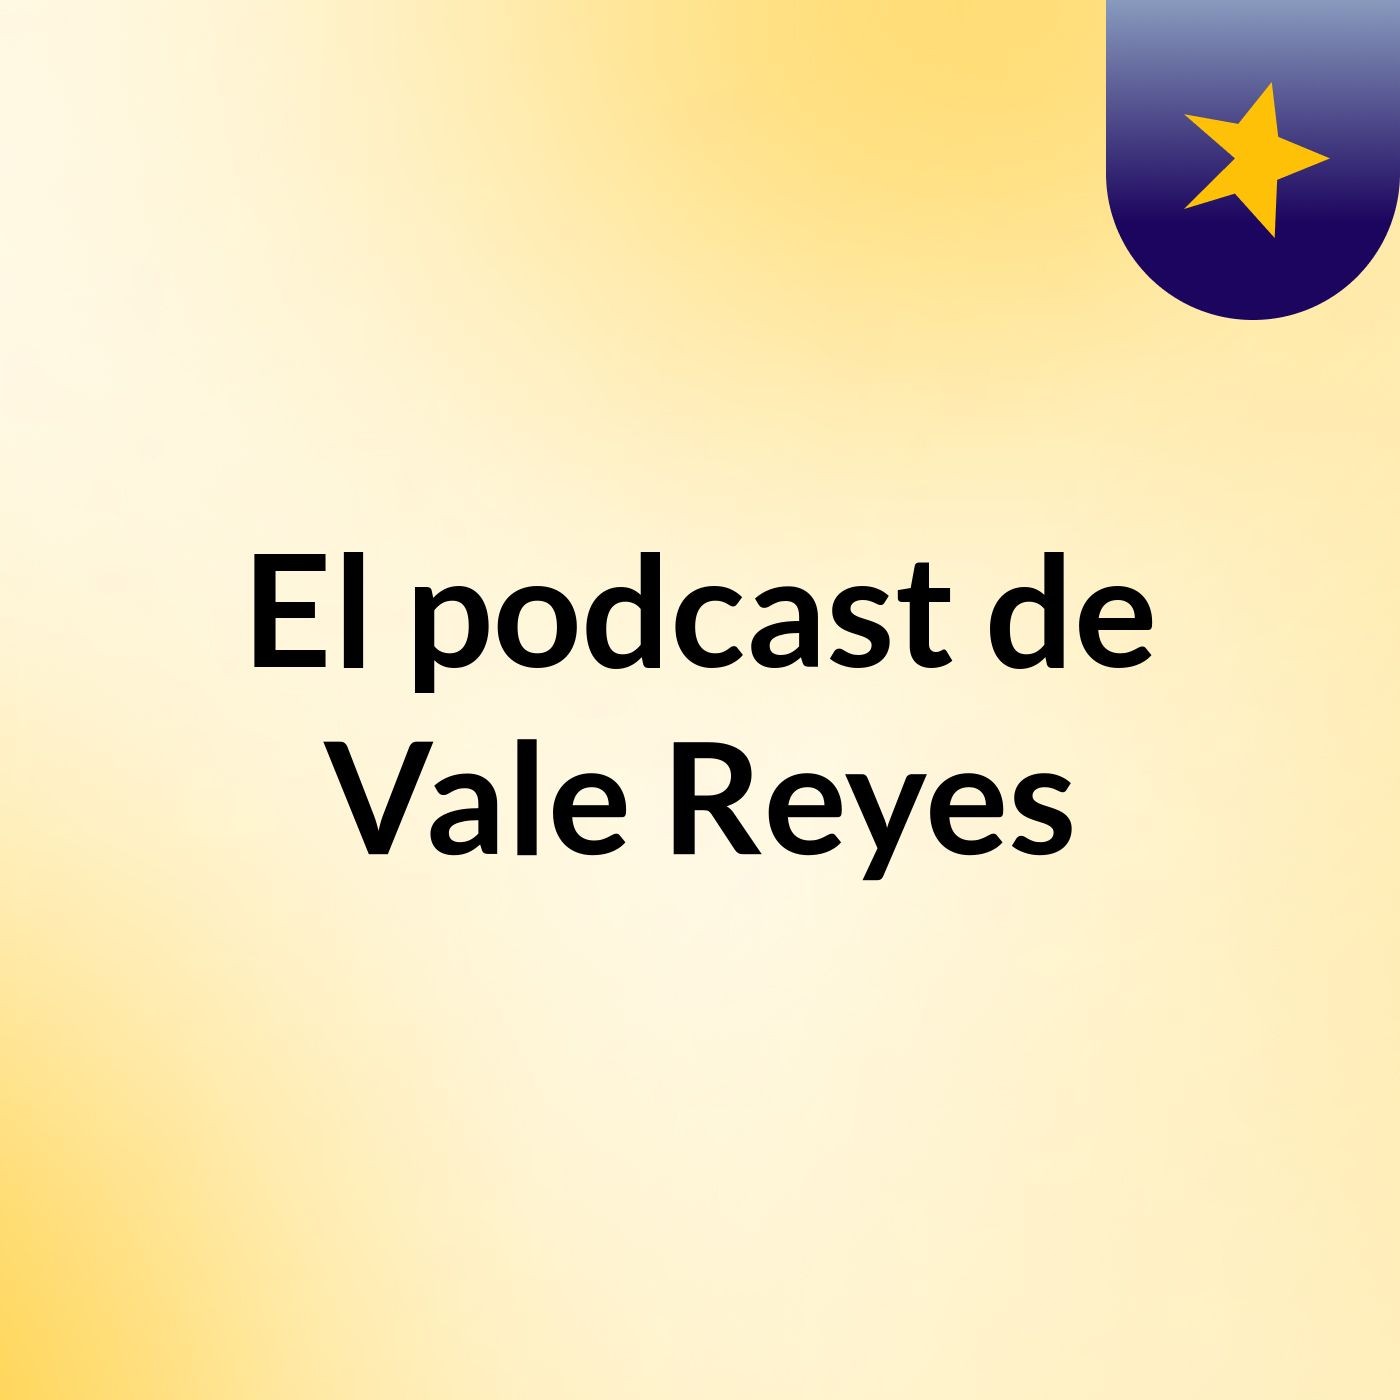 El podcast de Vale Reyes